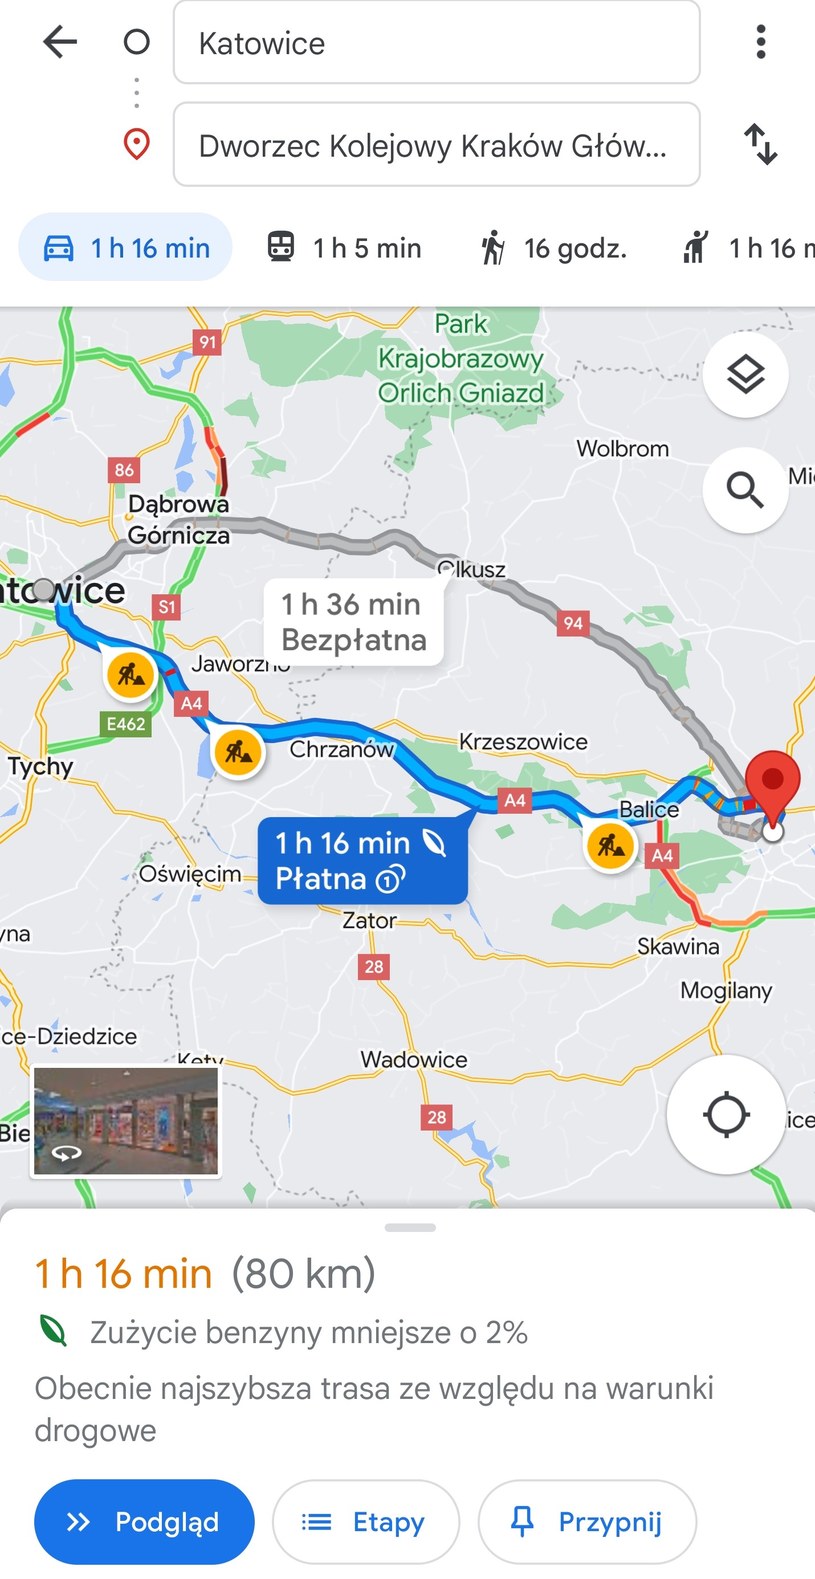 Trasa z Katowic do Krakowa samochodem wyznaczona w Mapach Google. /materiał zewnętrzny